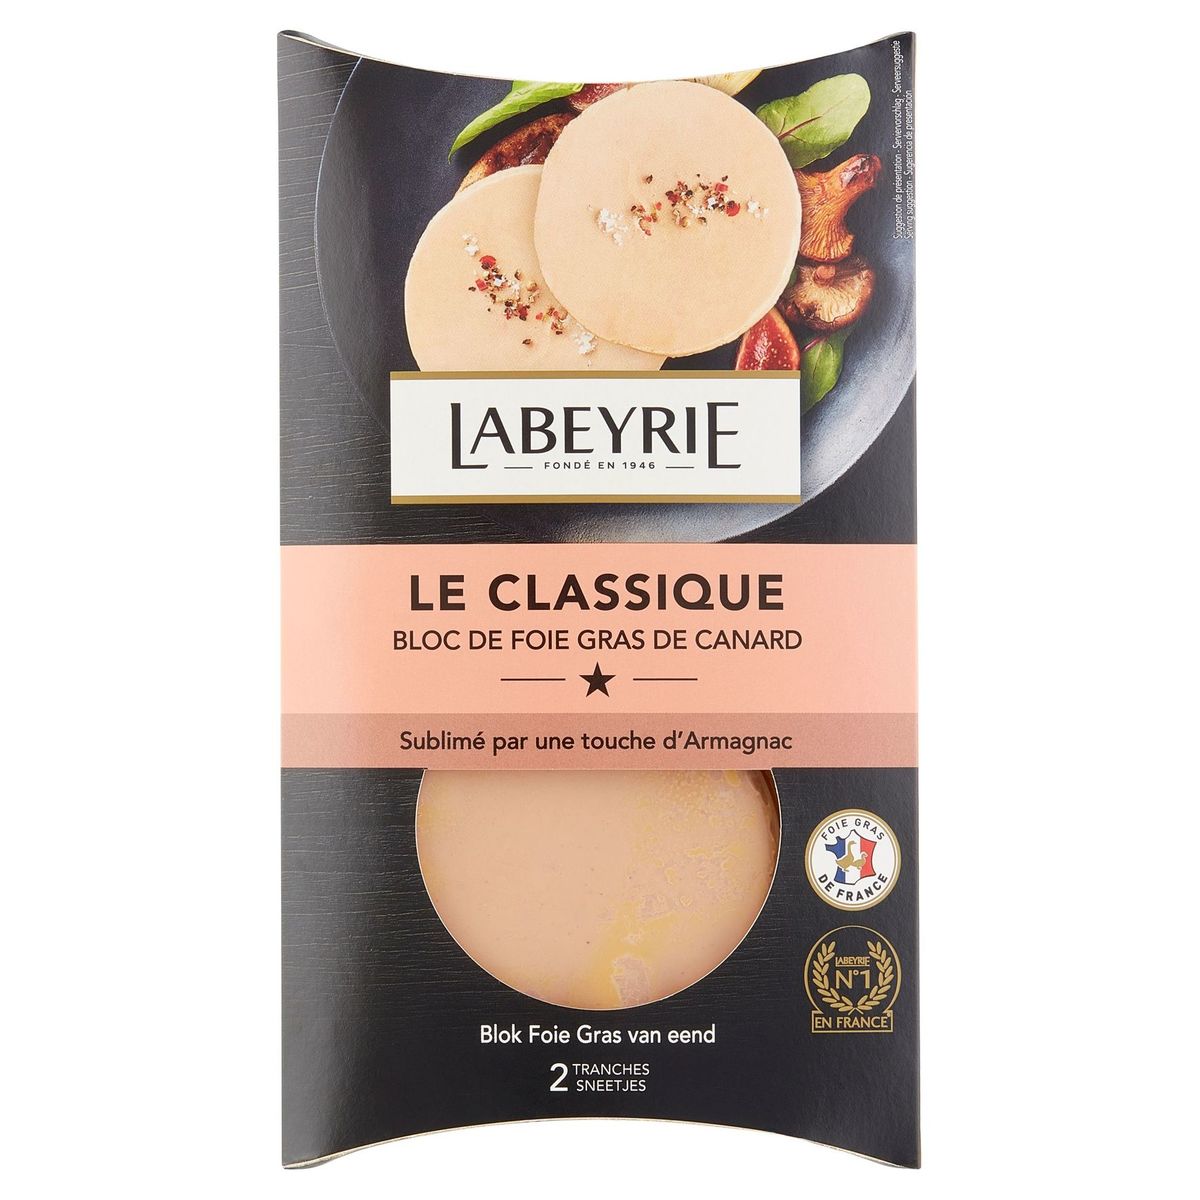 Labeyrie Le Classique Bloc de Foie Gras de Canard 80 g